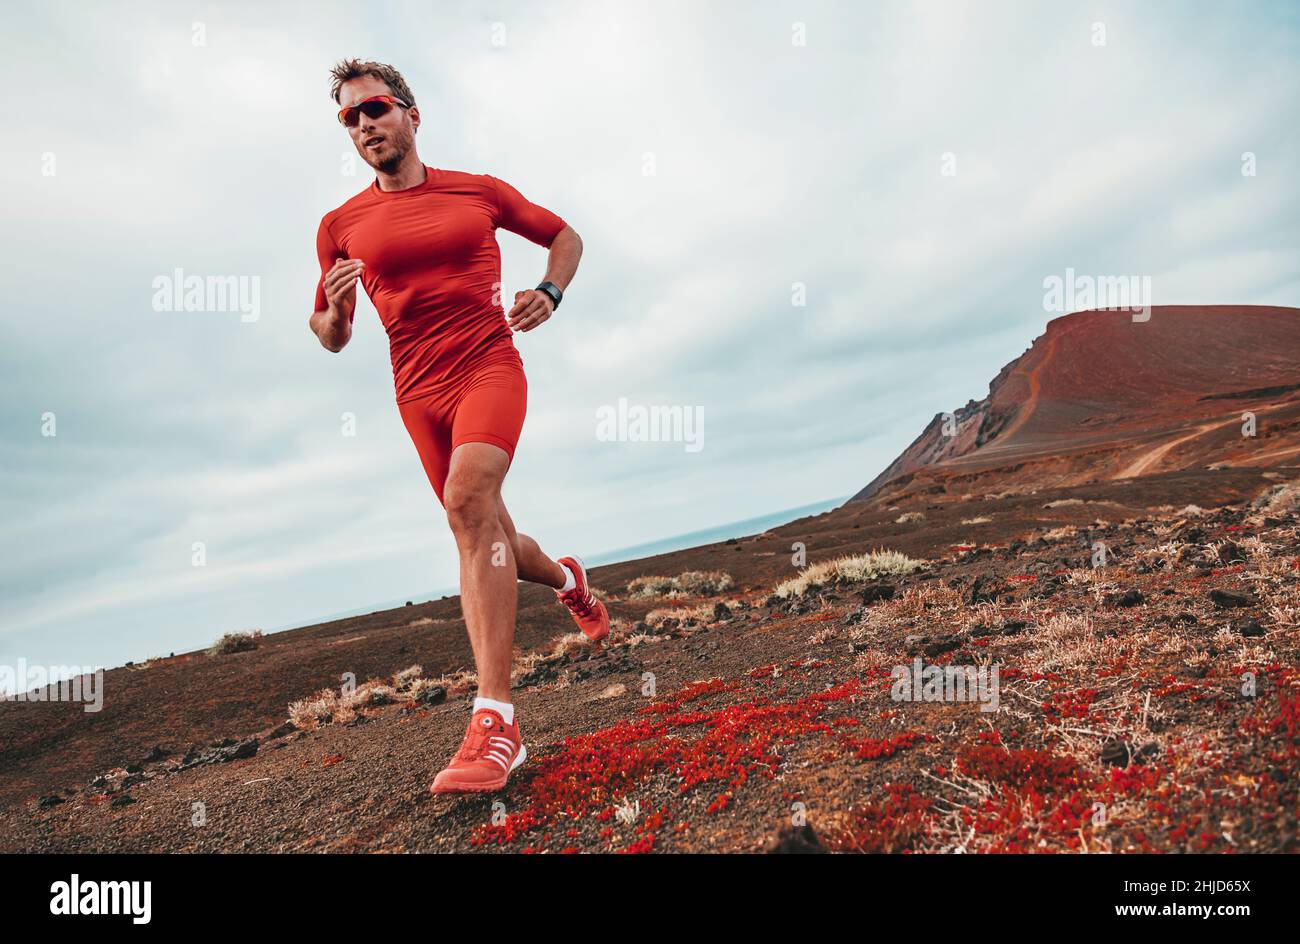 Laufen Marathon Mann Läufer Sport Athlet Training Ultra Laufen auf langen  Strecken Ausdauer Trail Rennen tragen Kompressionskleidung, Sonnenbrille  Stockfotografie - Alamy